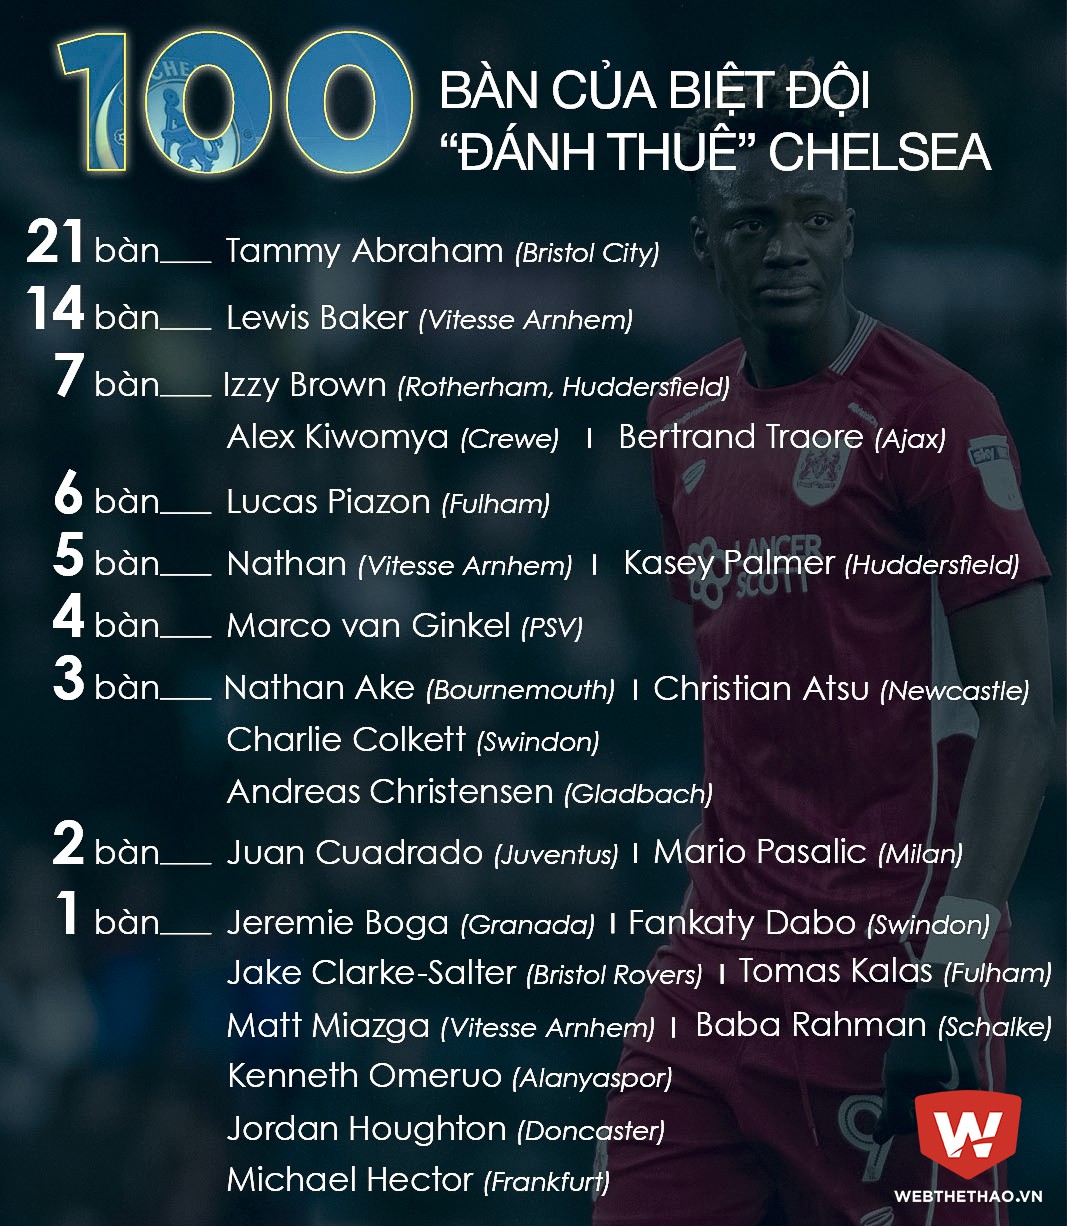 Biệt đội đánh thuê của Chelsea đã ghi 100 bàn trong mùa này